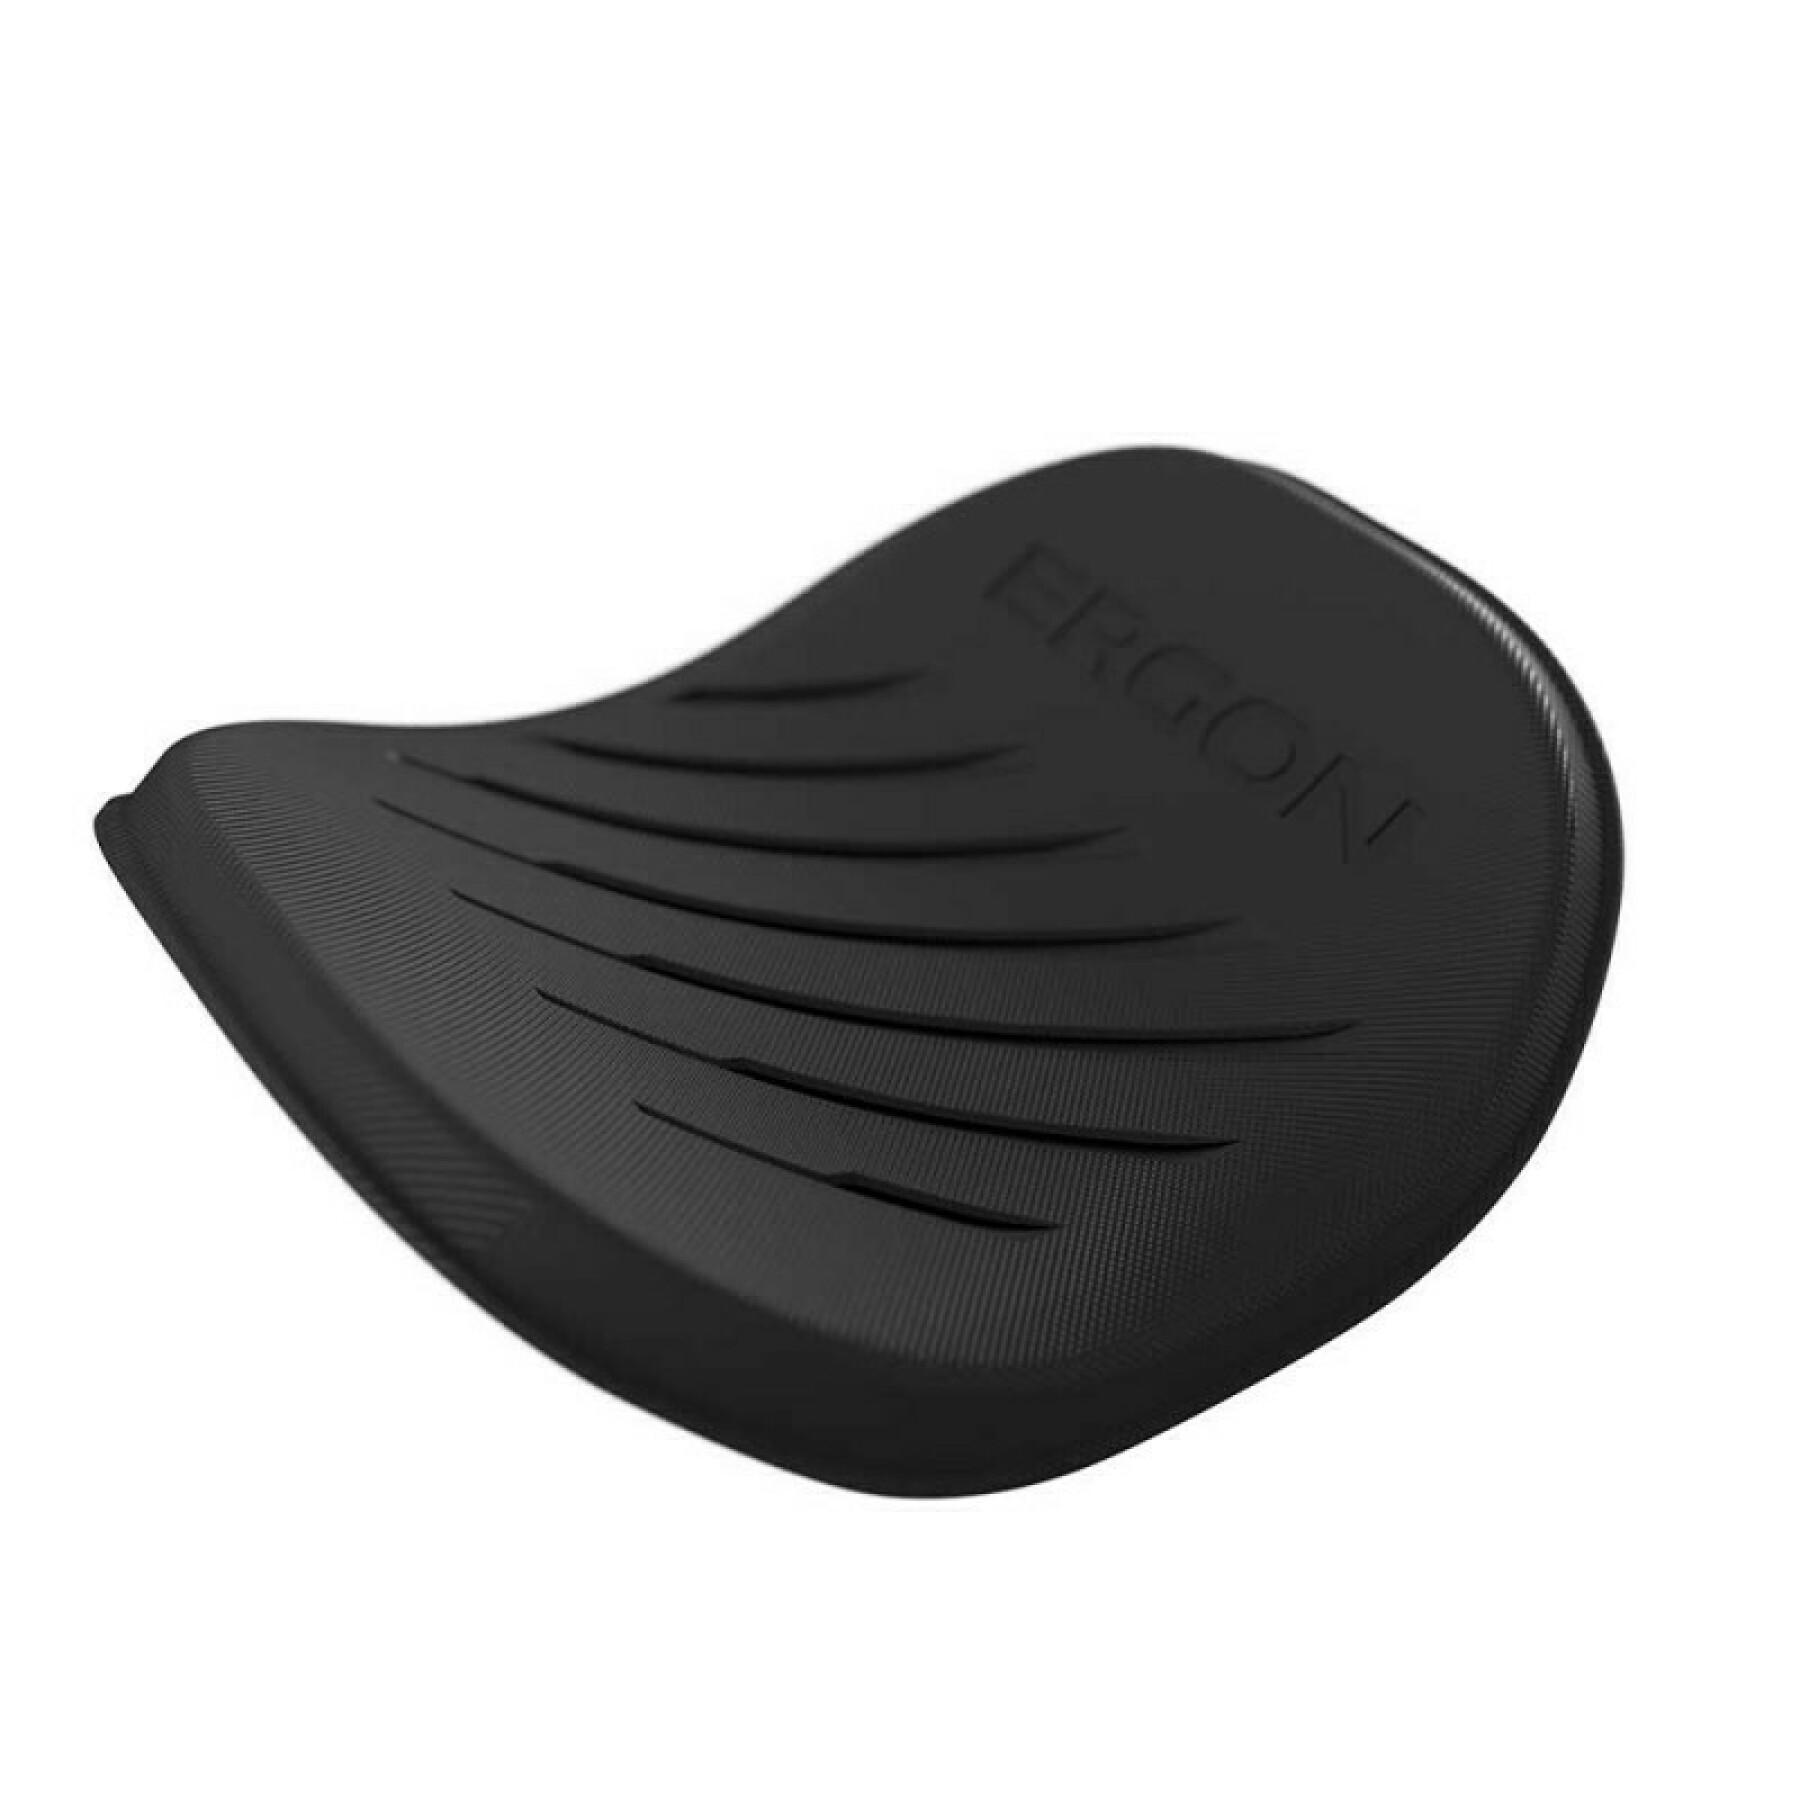 Kit Ergon pads CRT Arm pads for profile design ergo